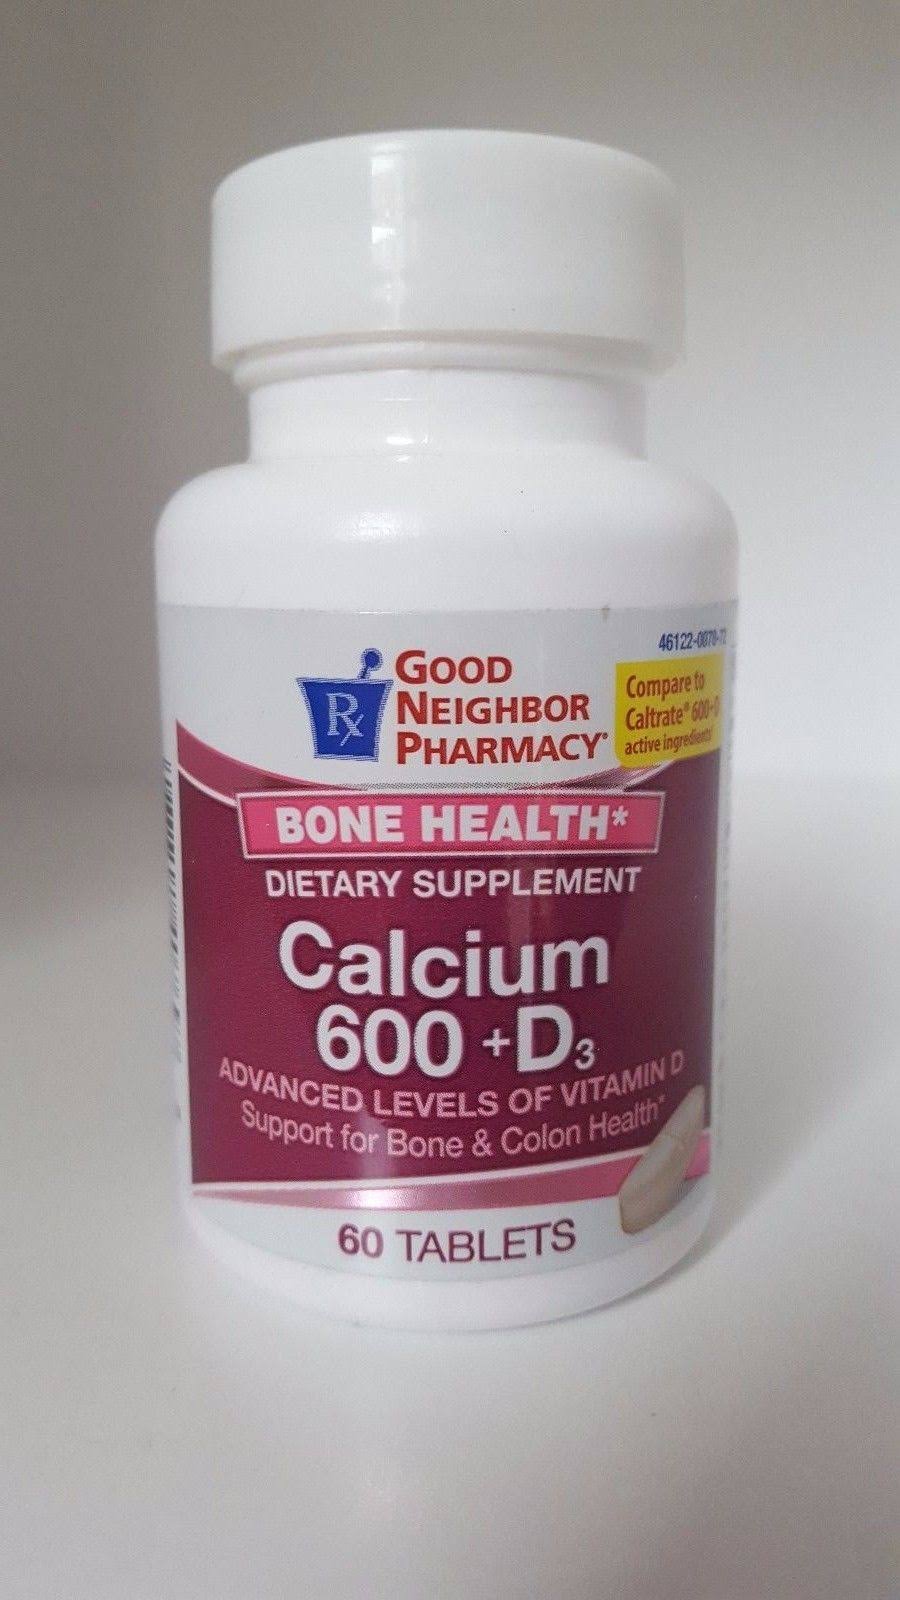 Good Neighbor Pharmacy Bone Health Calcium 600 +D3 60 Tablets